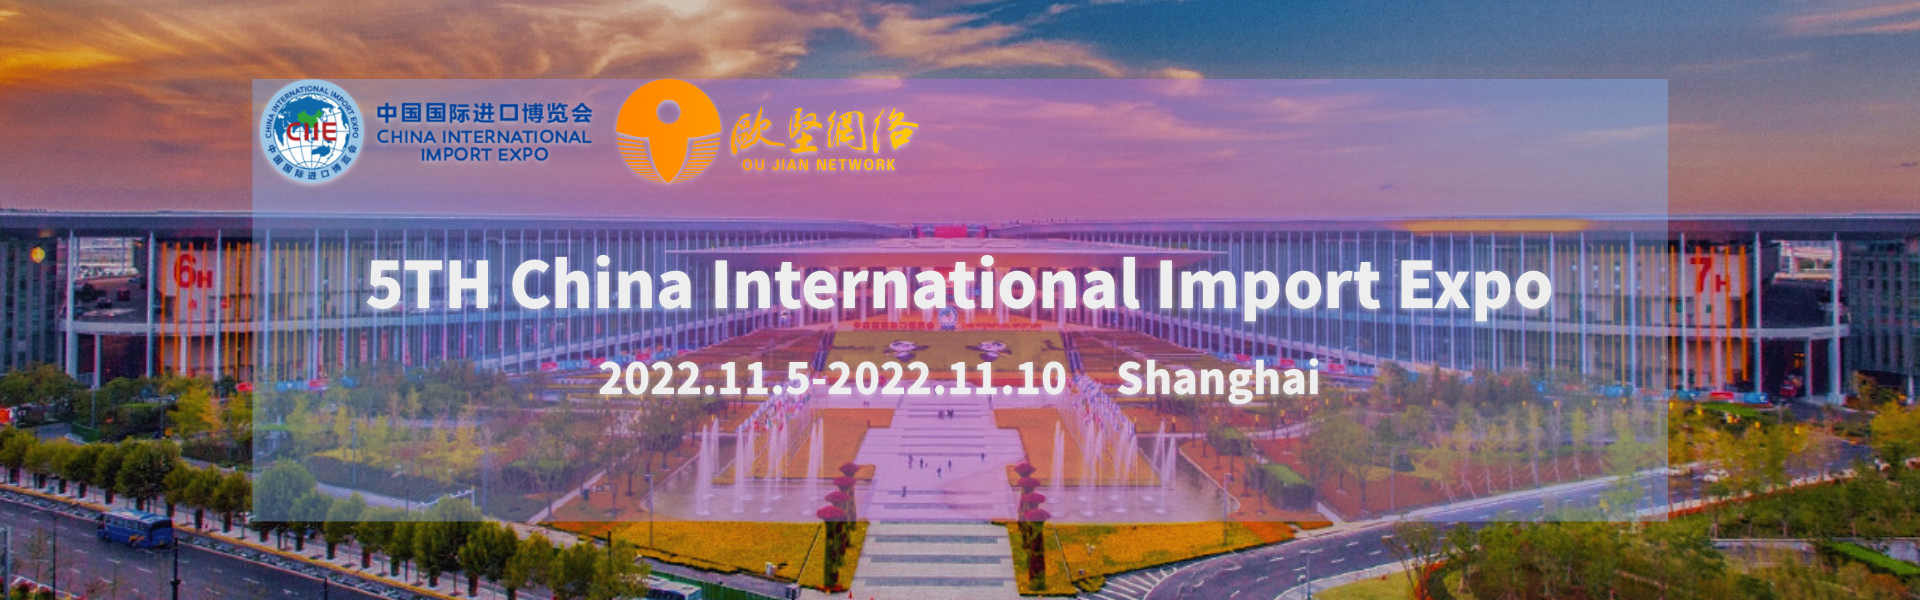 Exposició internacional d'importació de la Xina